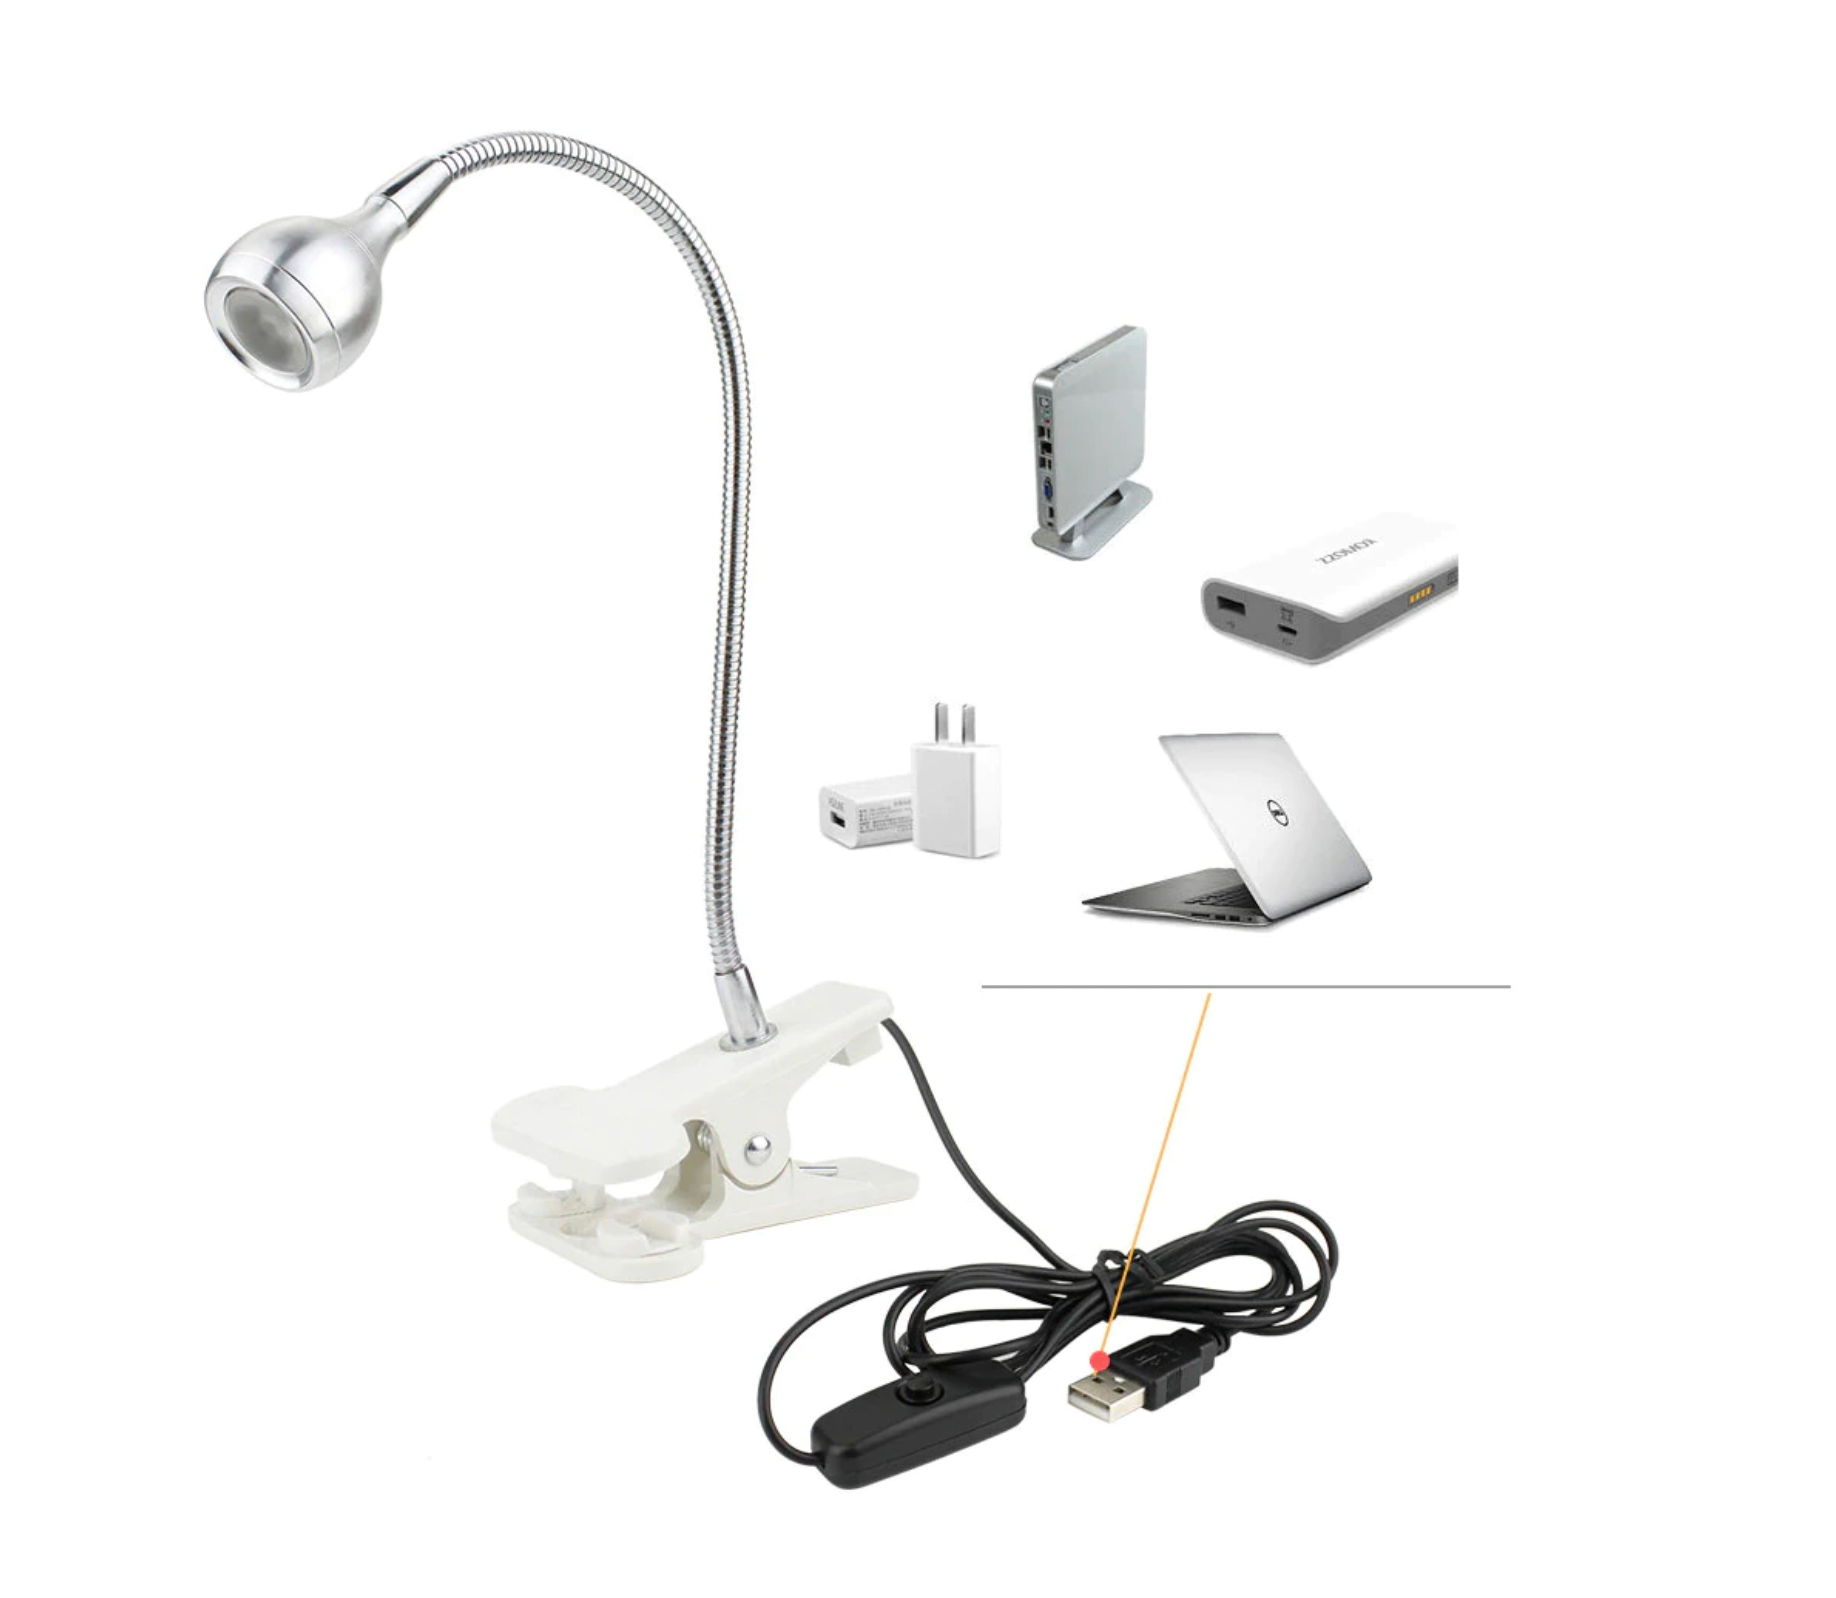 Lampa UV/LED mini Fast Lamp, flexibila , cablu USB, pentru manichiura si pedichiura, culoare Negru